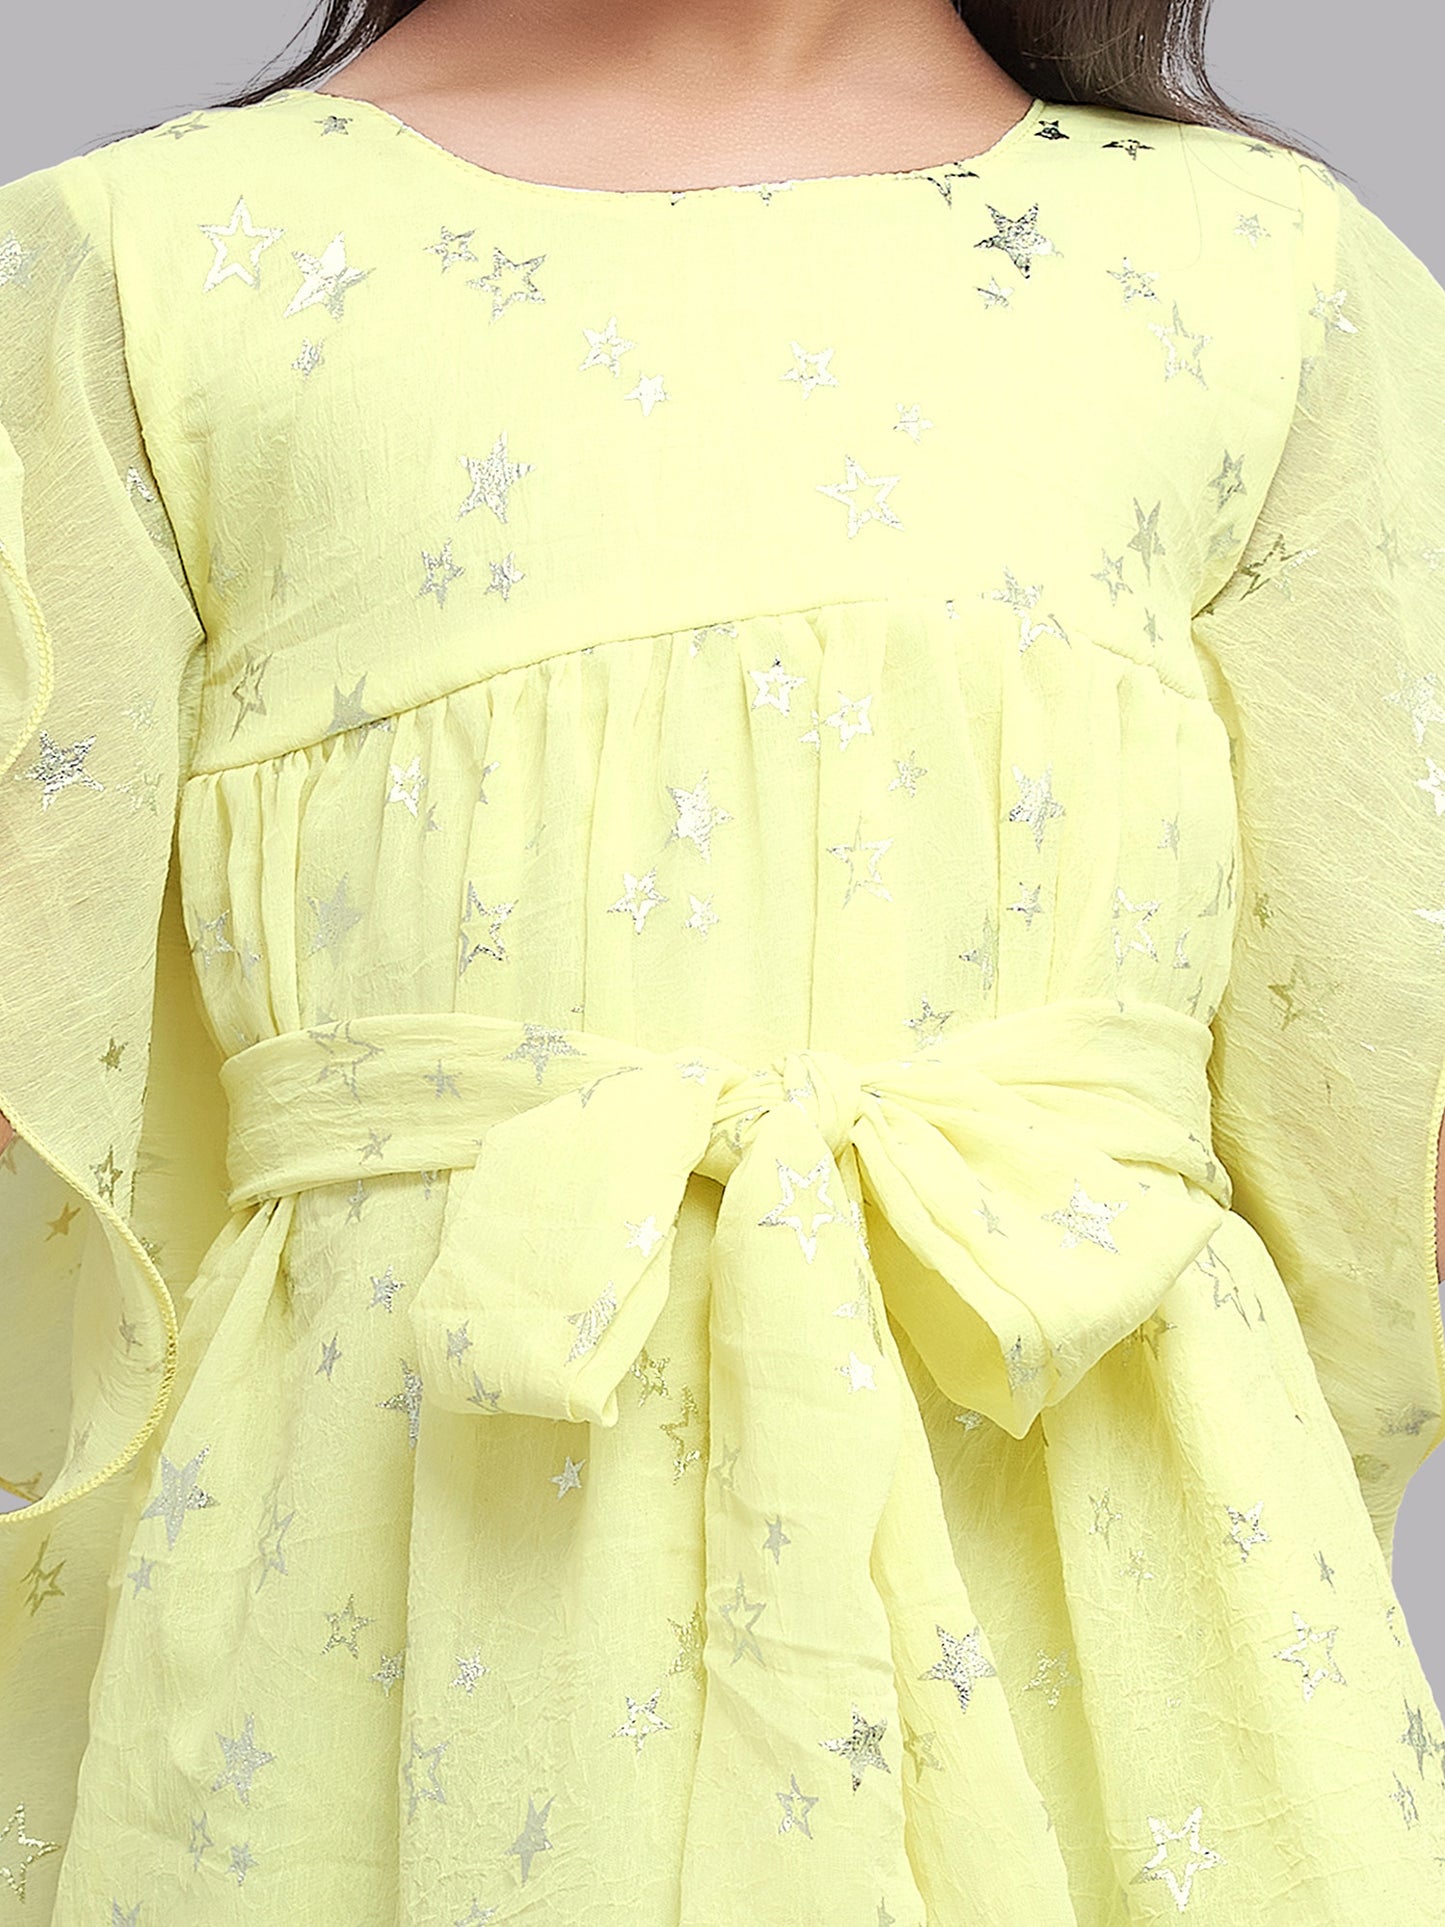 Pink Chick Kimono Style Star Dress -yellow